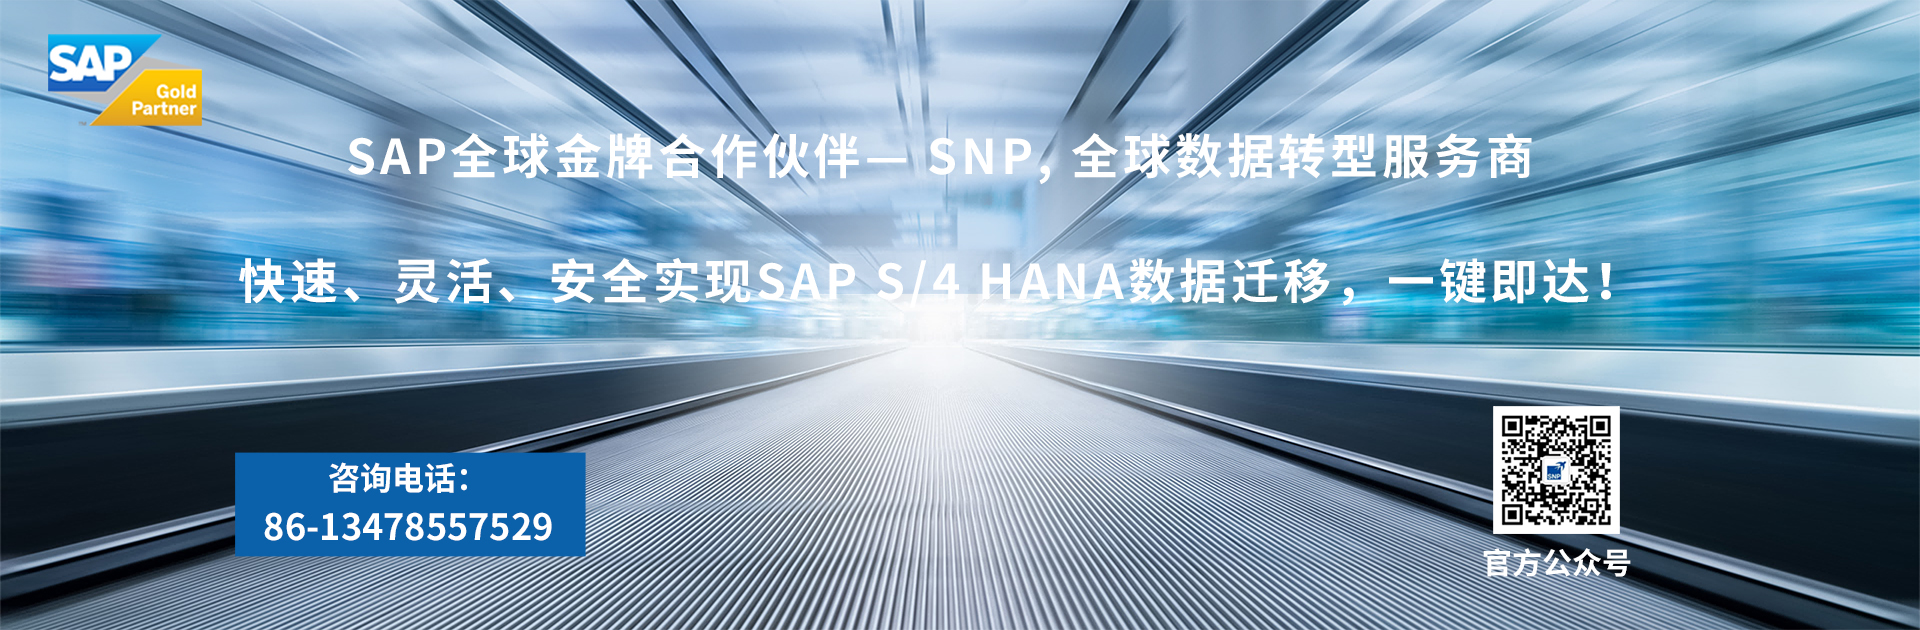 SAP全球金牌合作伙伴— SNP, 全球数据转型服务商